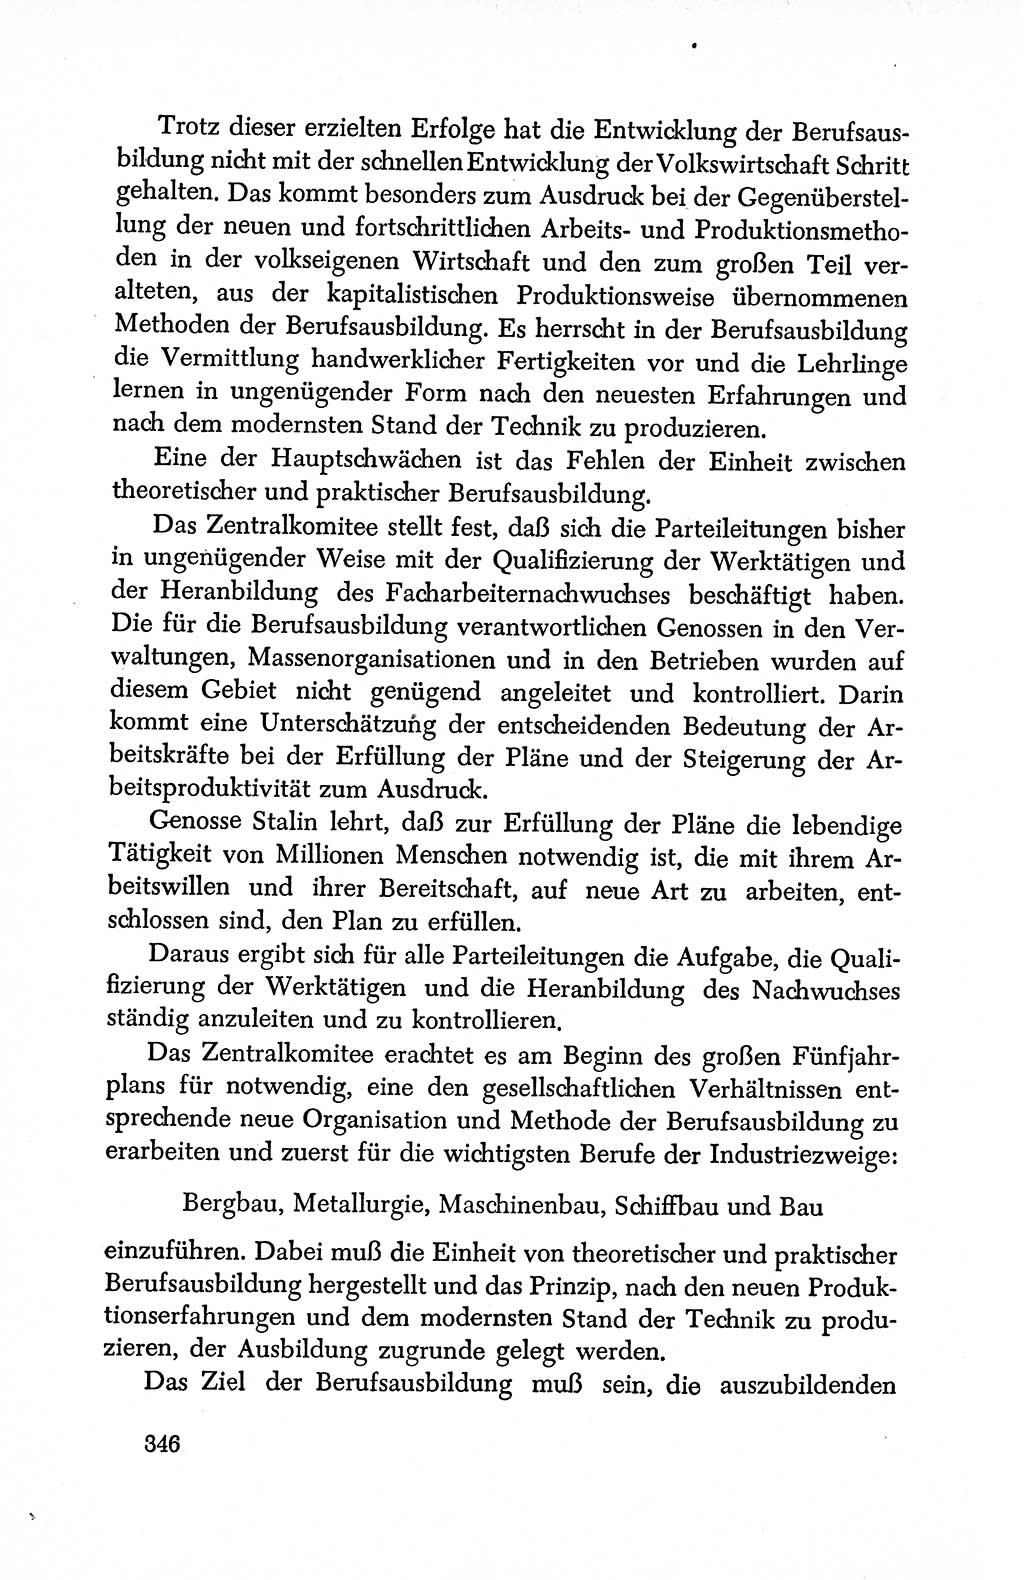 Dokumente der Sozialistischen Einheitspartei Deutschlands (SED) [Deutsche Demokratische Republik (DDR)] 1950-1952, Seite 346 (Dok. SED DDR 1950-1952, S. 346)